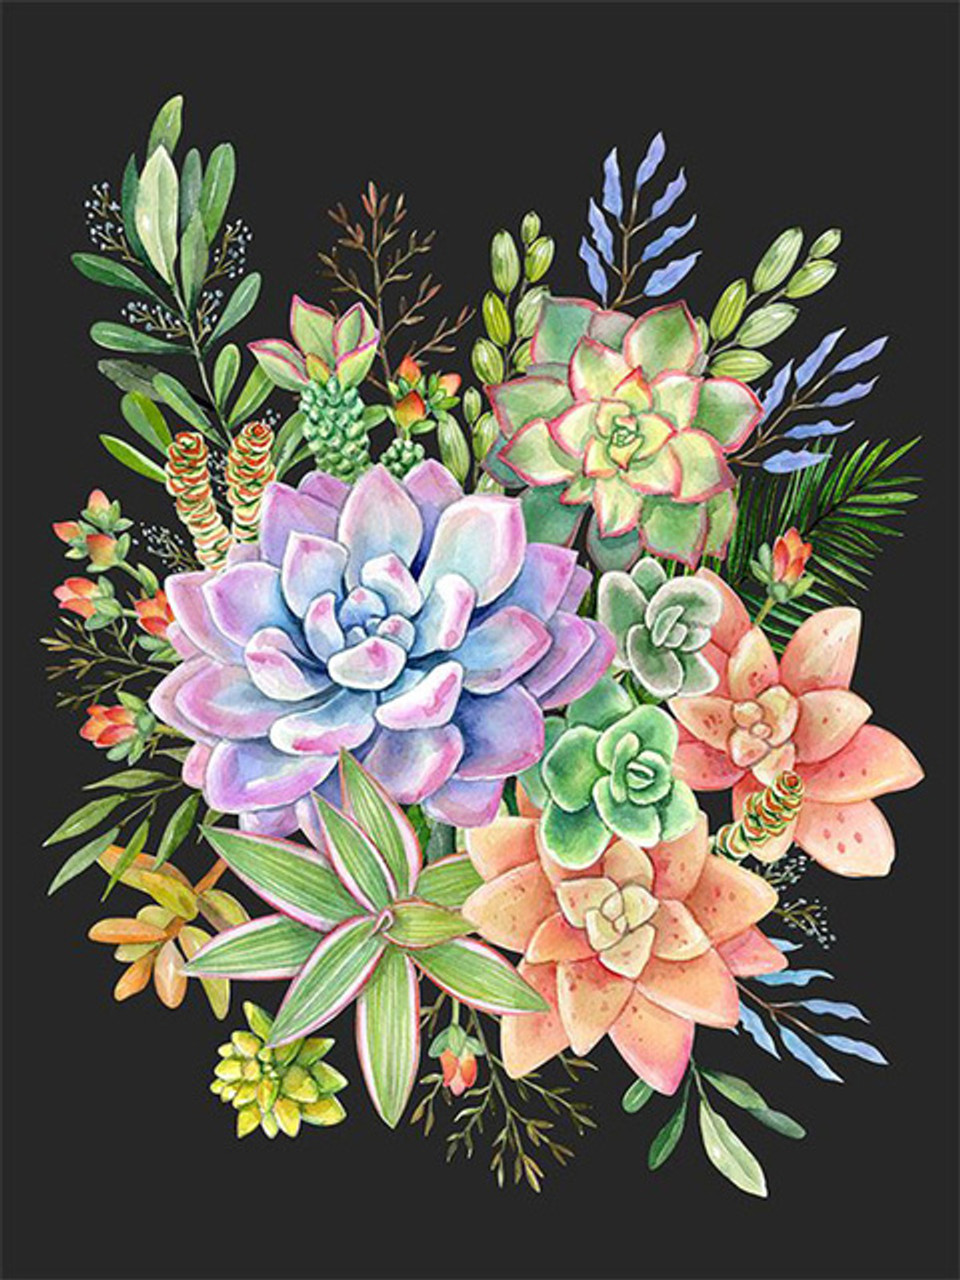 5D Diamond Painting Succulent Flower Bouquet Kit - Bonanza Marketplace